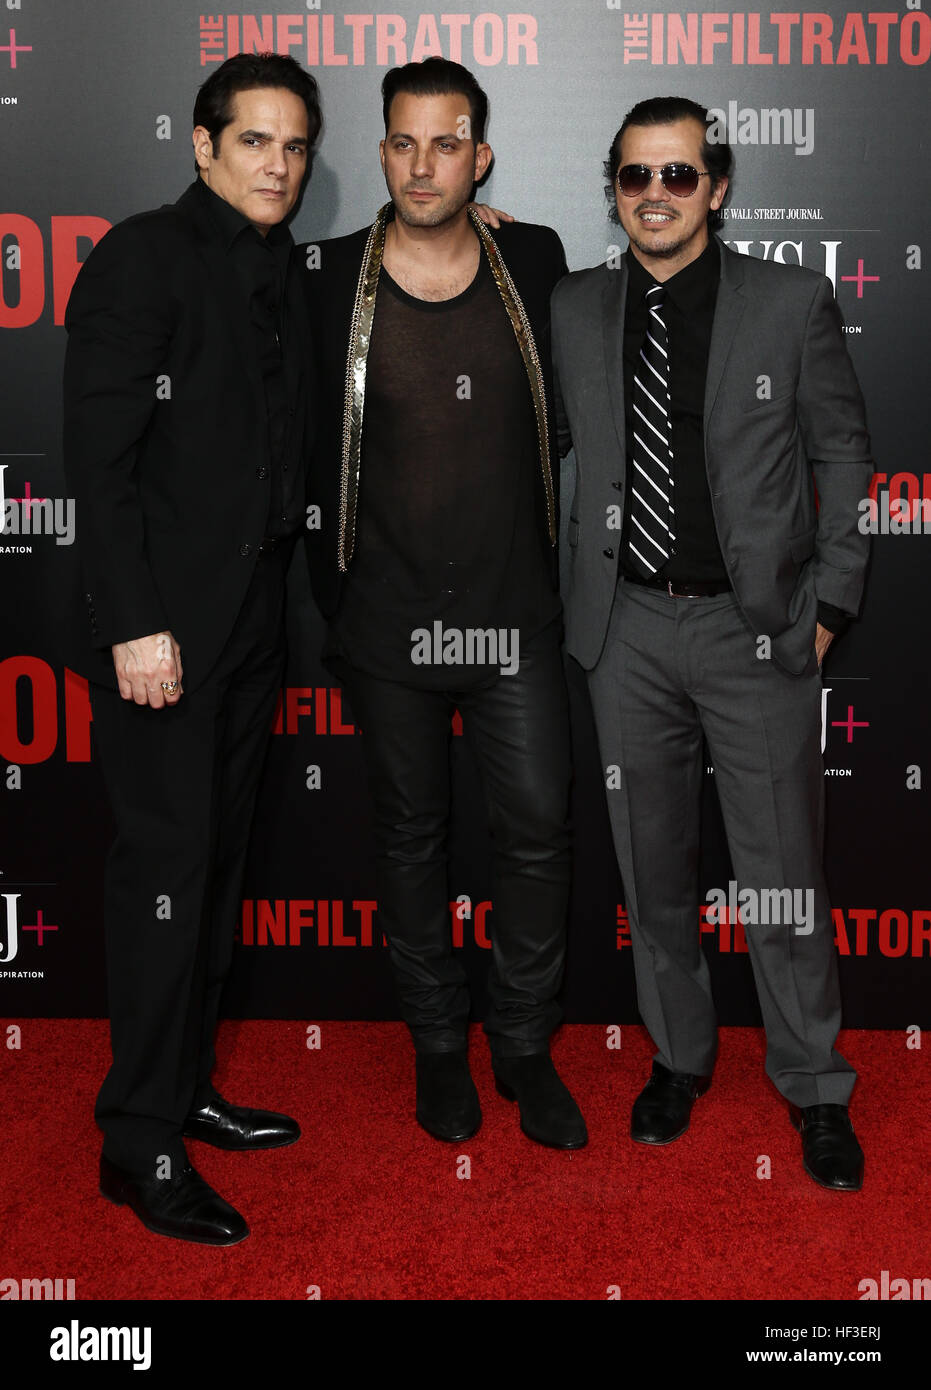 Yul Vasquez, Brad Furman und John Leguizamo teilnehmen "Der Eindringling" Premiere auf AMC Loews Theater am 11. Juli 2016 in New York. Stockfoto